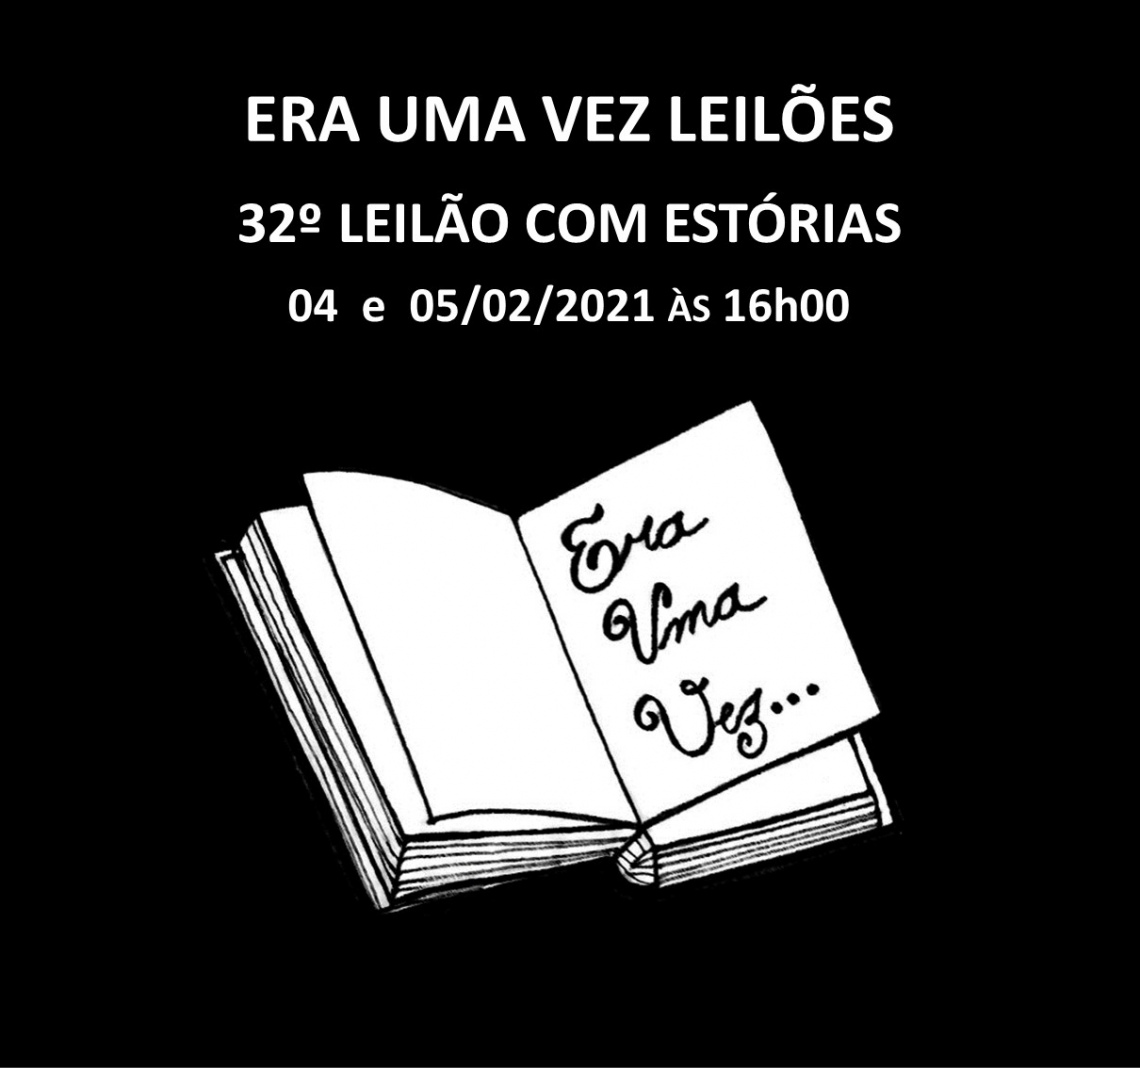 31º LEILÃO COM ESTÓRIAS - 03 e 04/12/2021 às 11h00